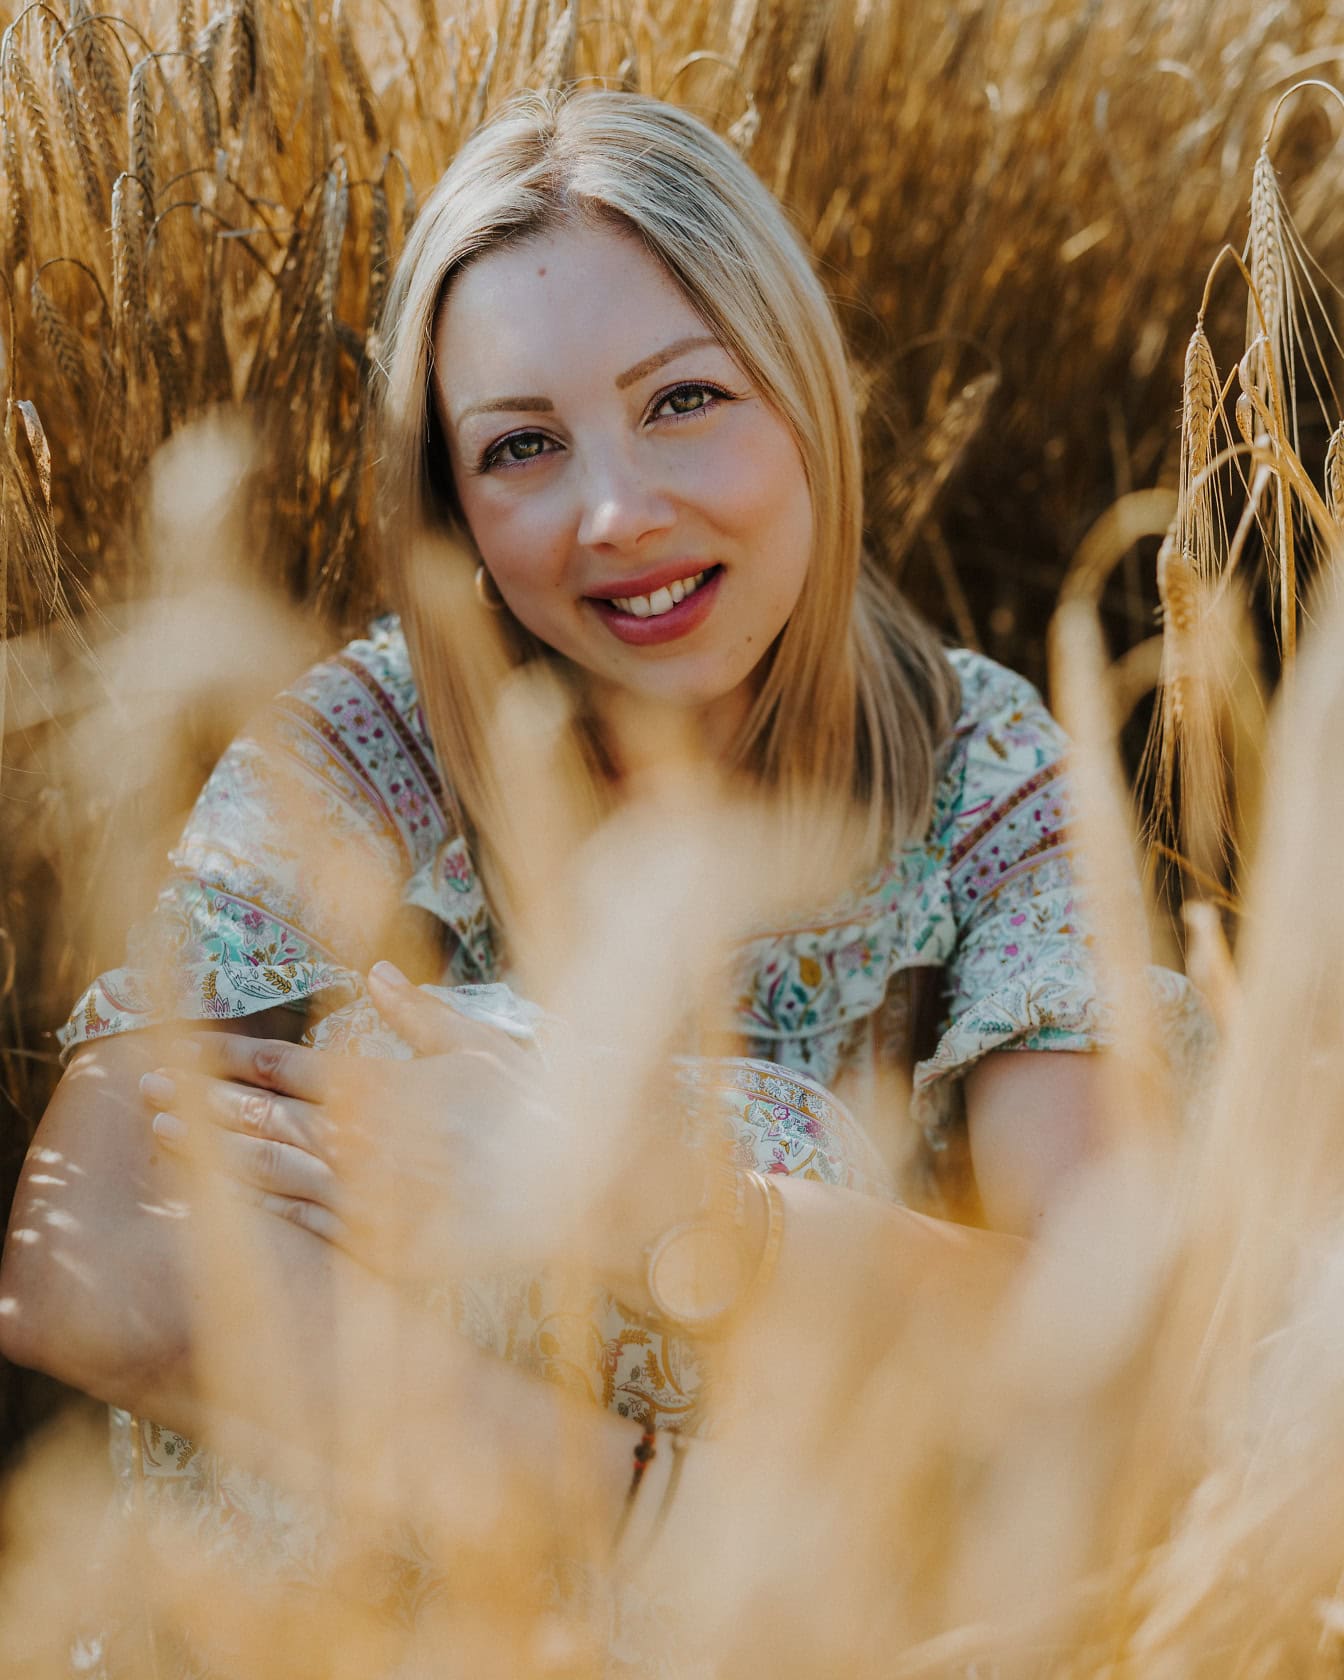 Una donna bionda di bellezza mozzafiato seduta e sorridente in un campo di grano